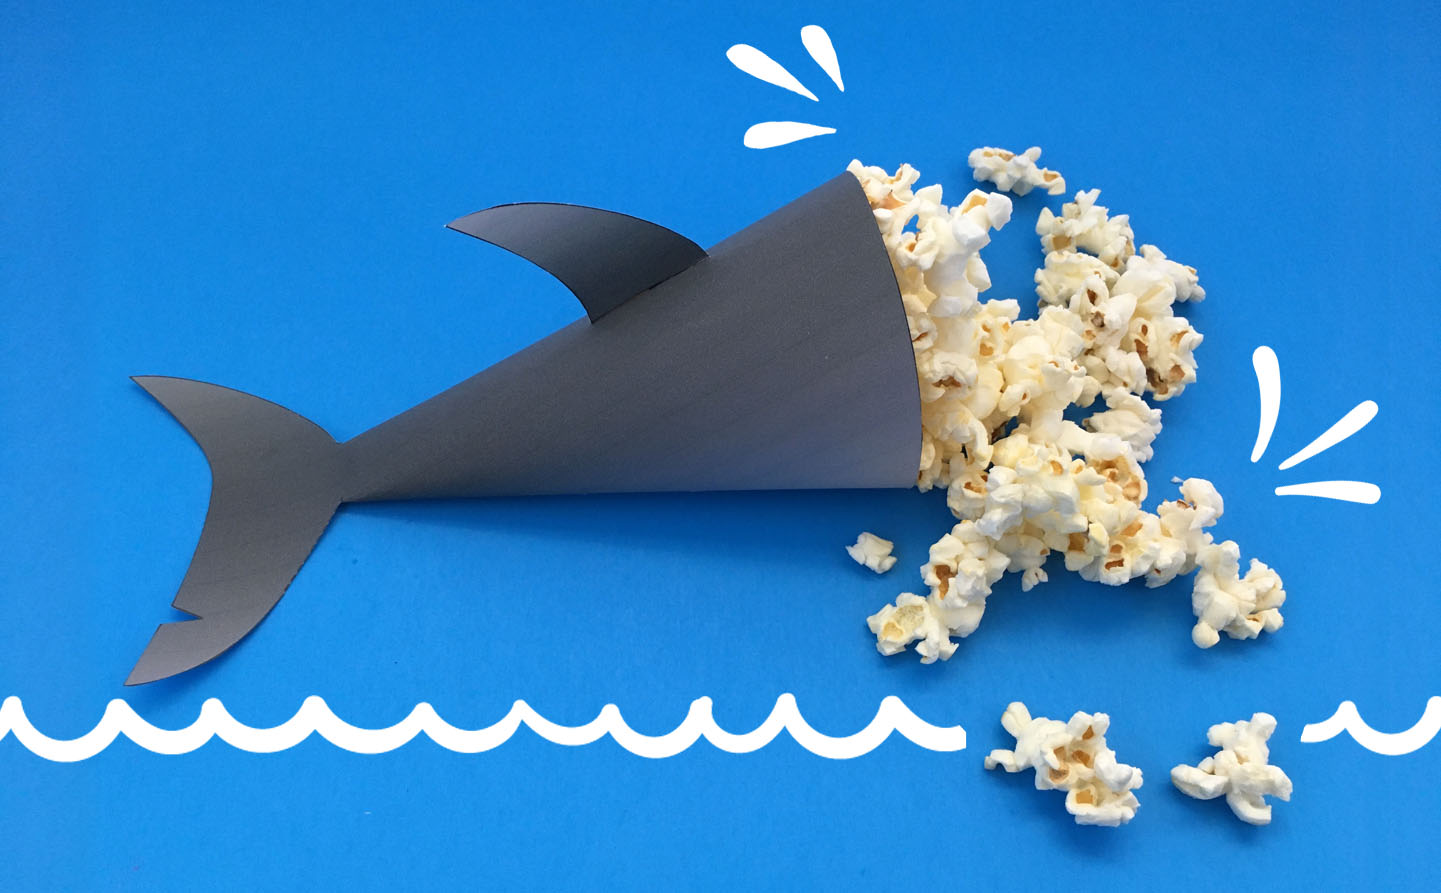 Shark Party Printable Popcorn Holder #popcornholder #sharkweek #sharkparty #sharkcraft